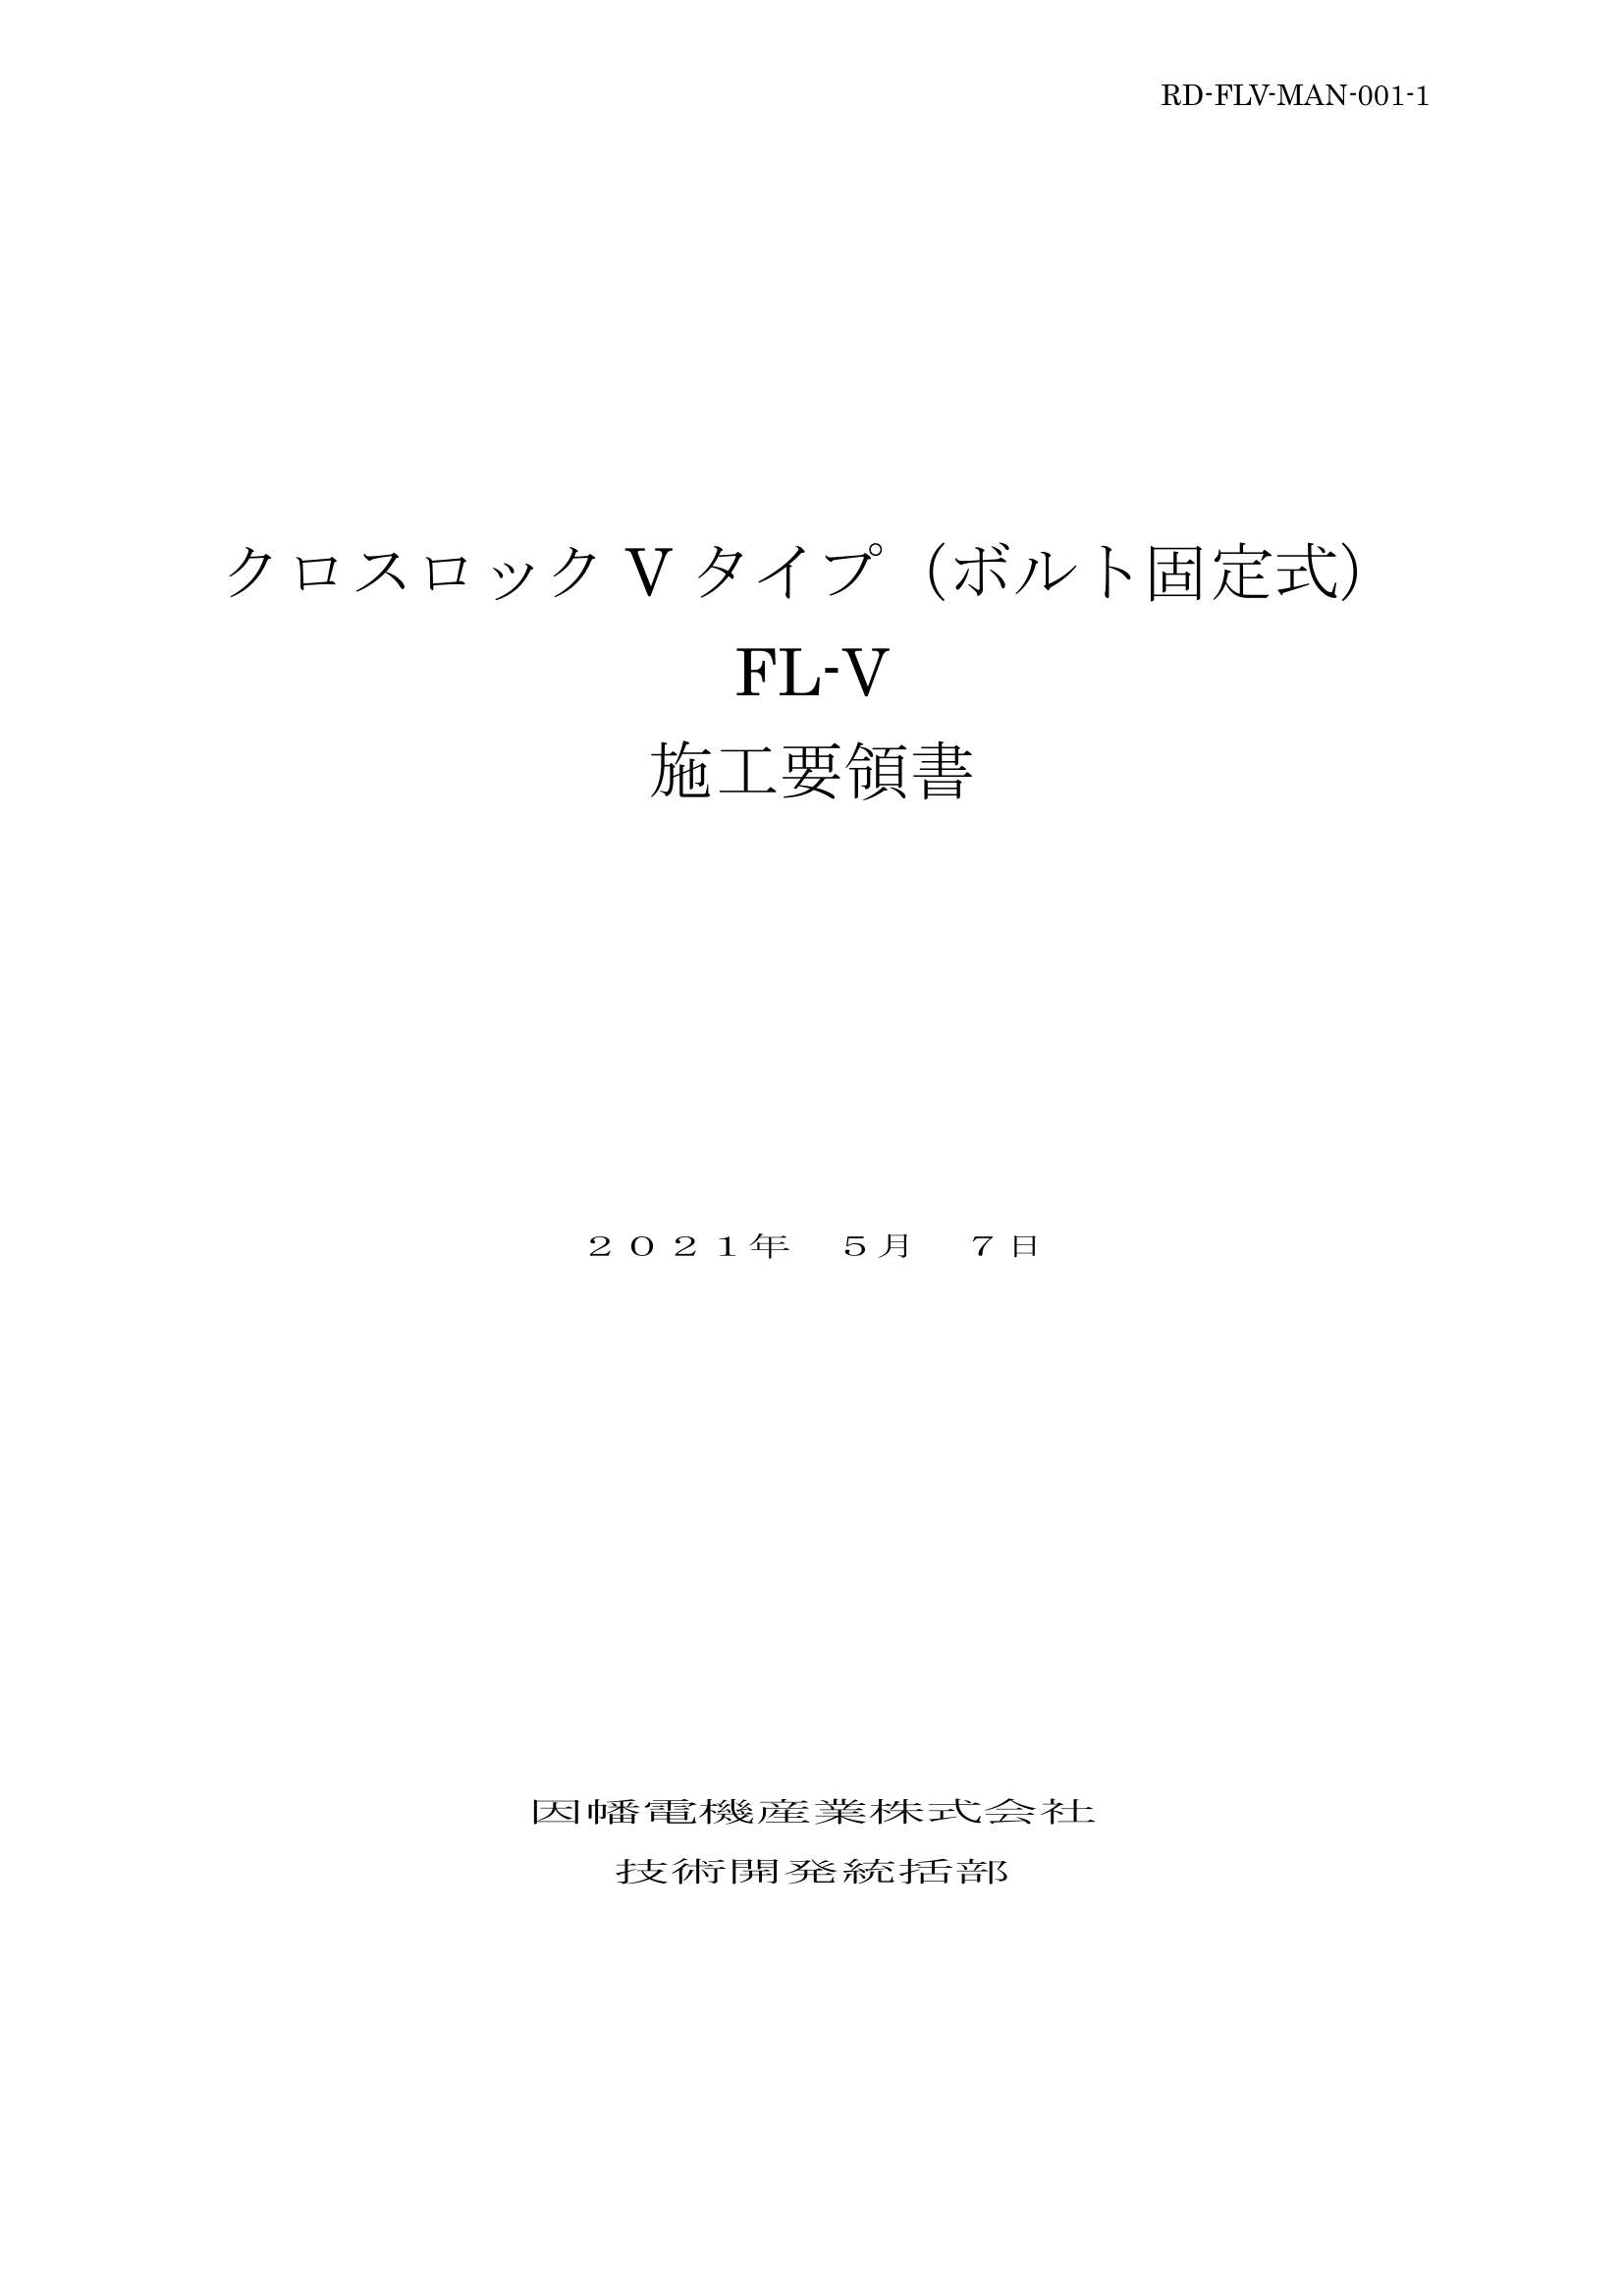 FL-V_施工要領書_20210507.pdf